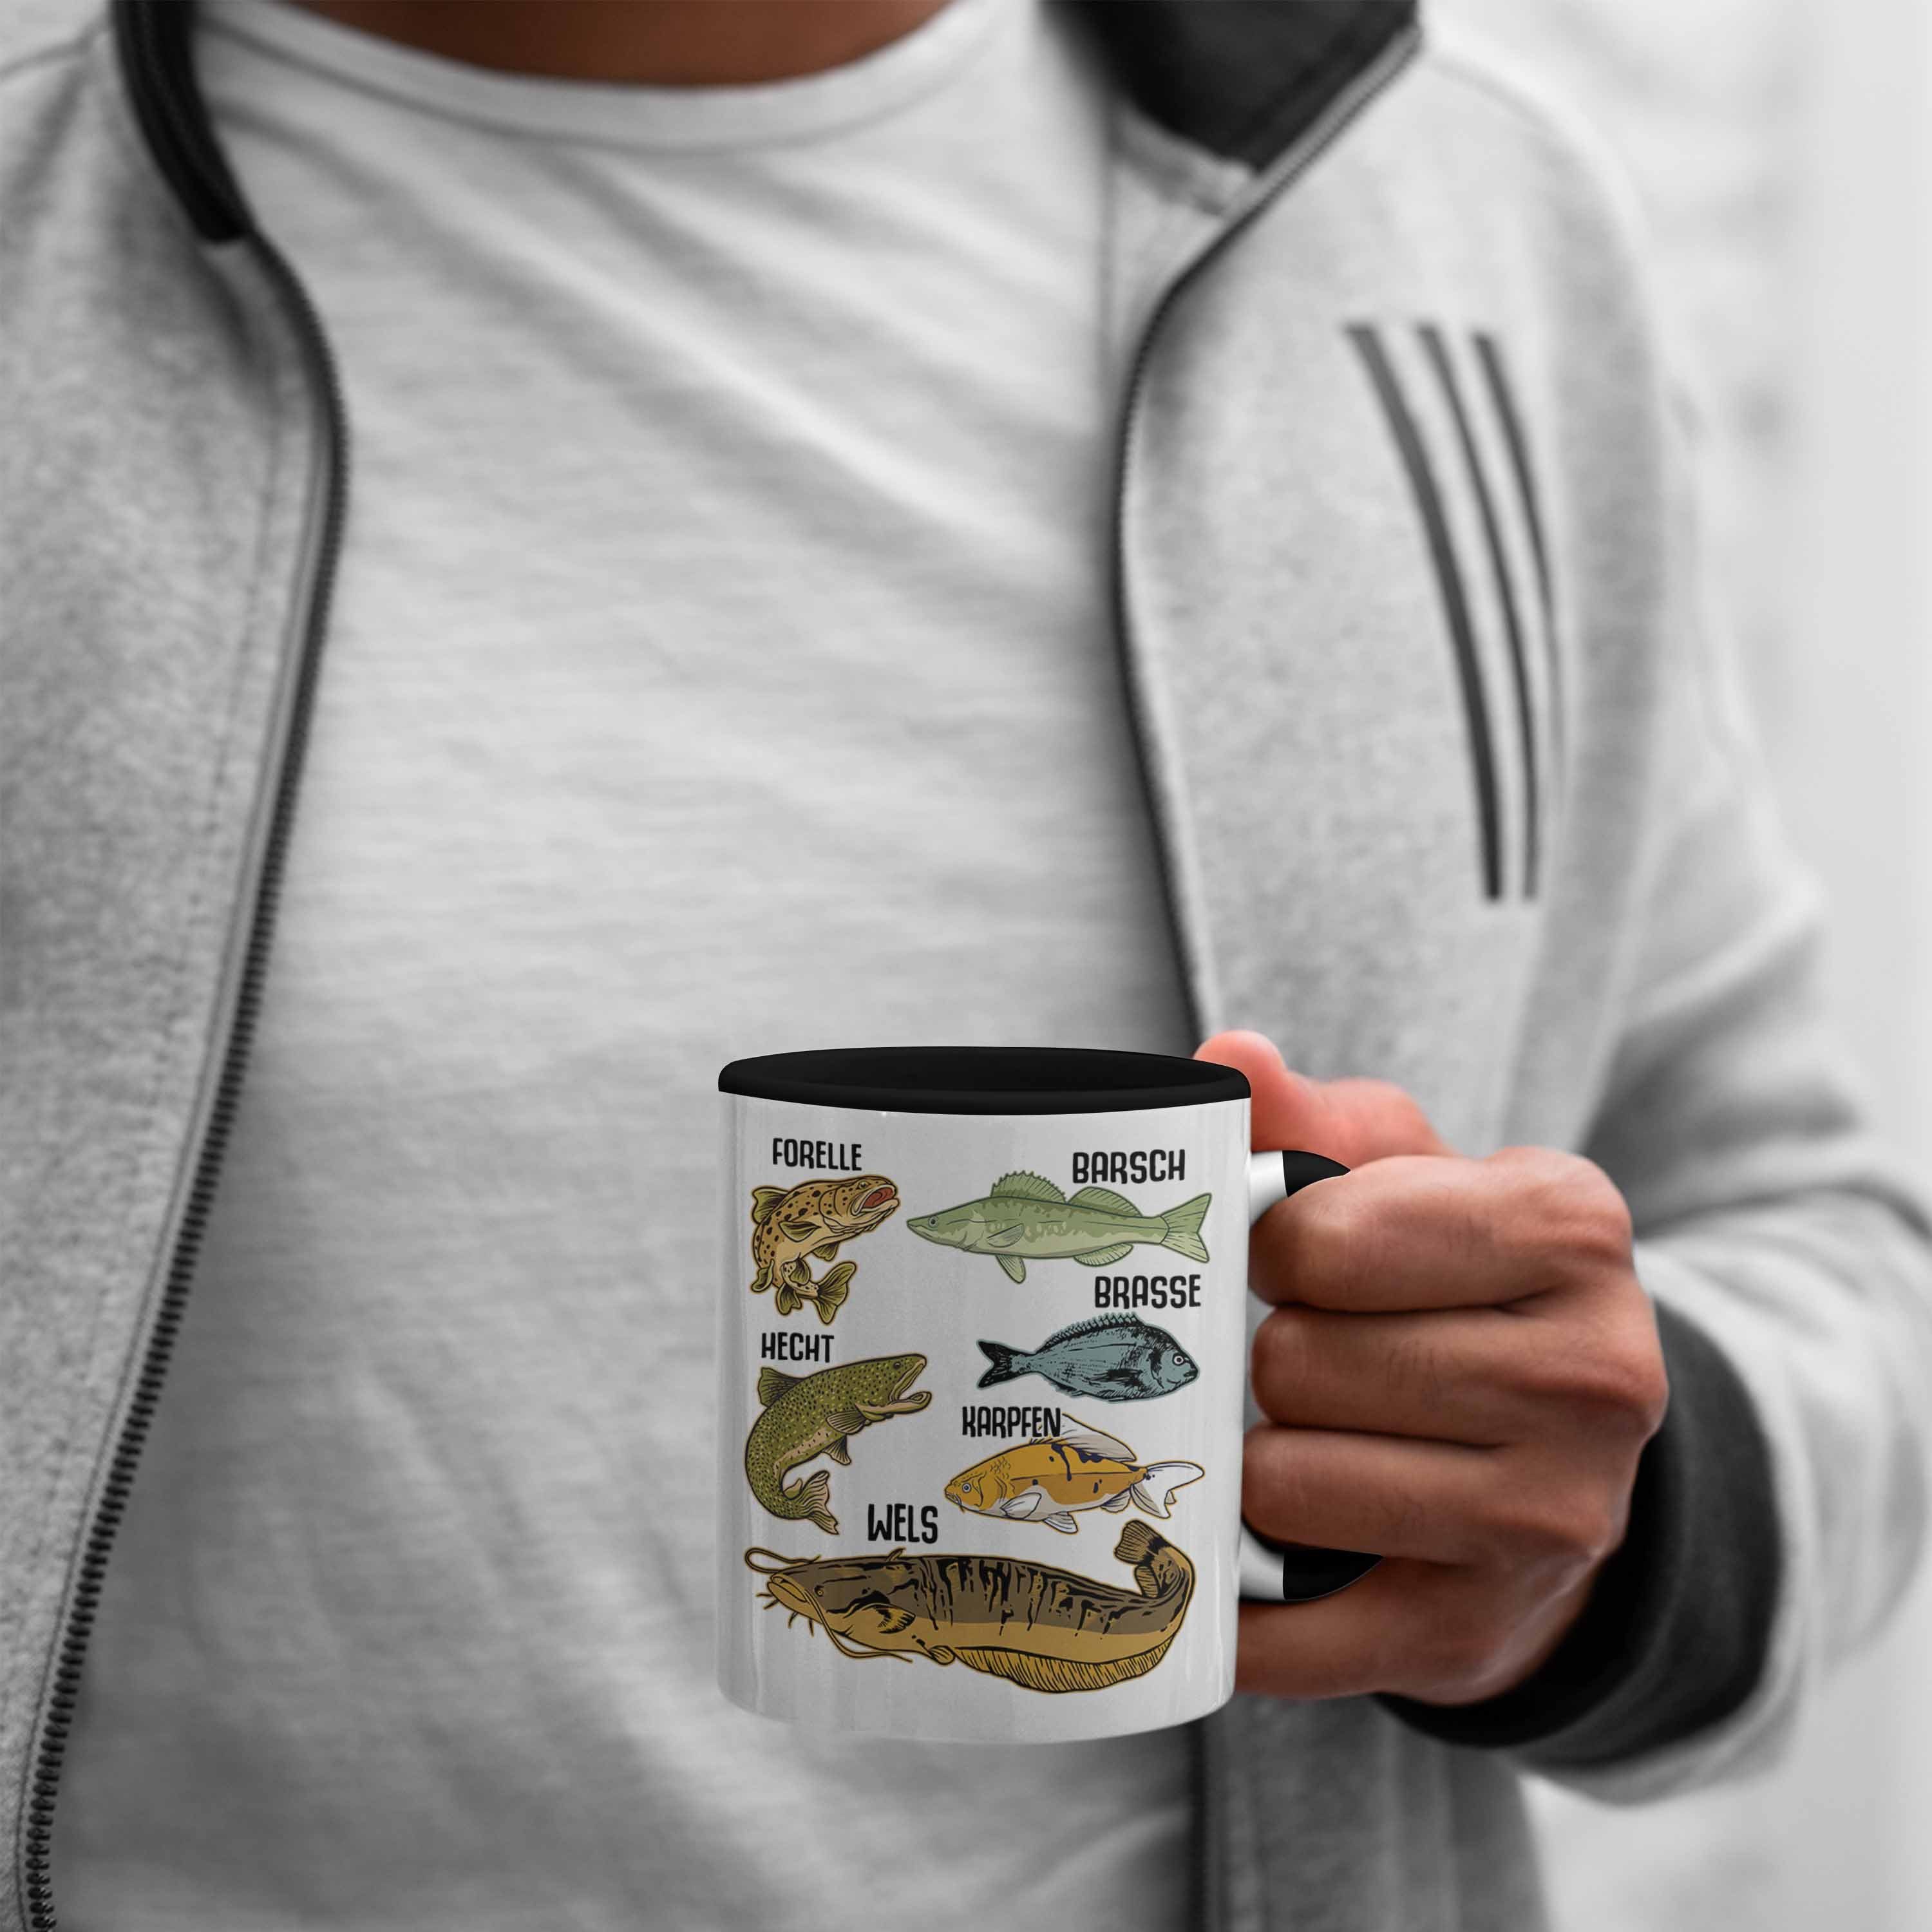 Hobbyangler Hecht Schwarz Trendation Barsch Trendation Fischer Forelle Angeln Fischarten - Raubfische Kaffeetasse mit Tasse Angler Tasse Geschenk